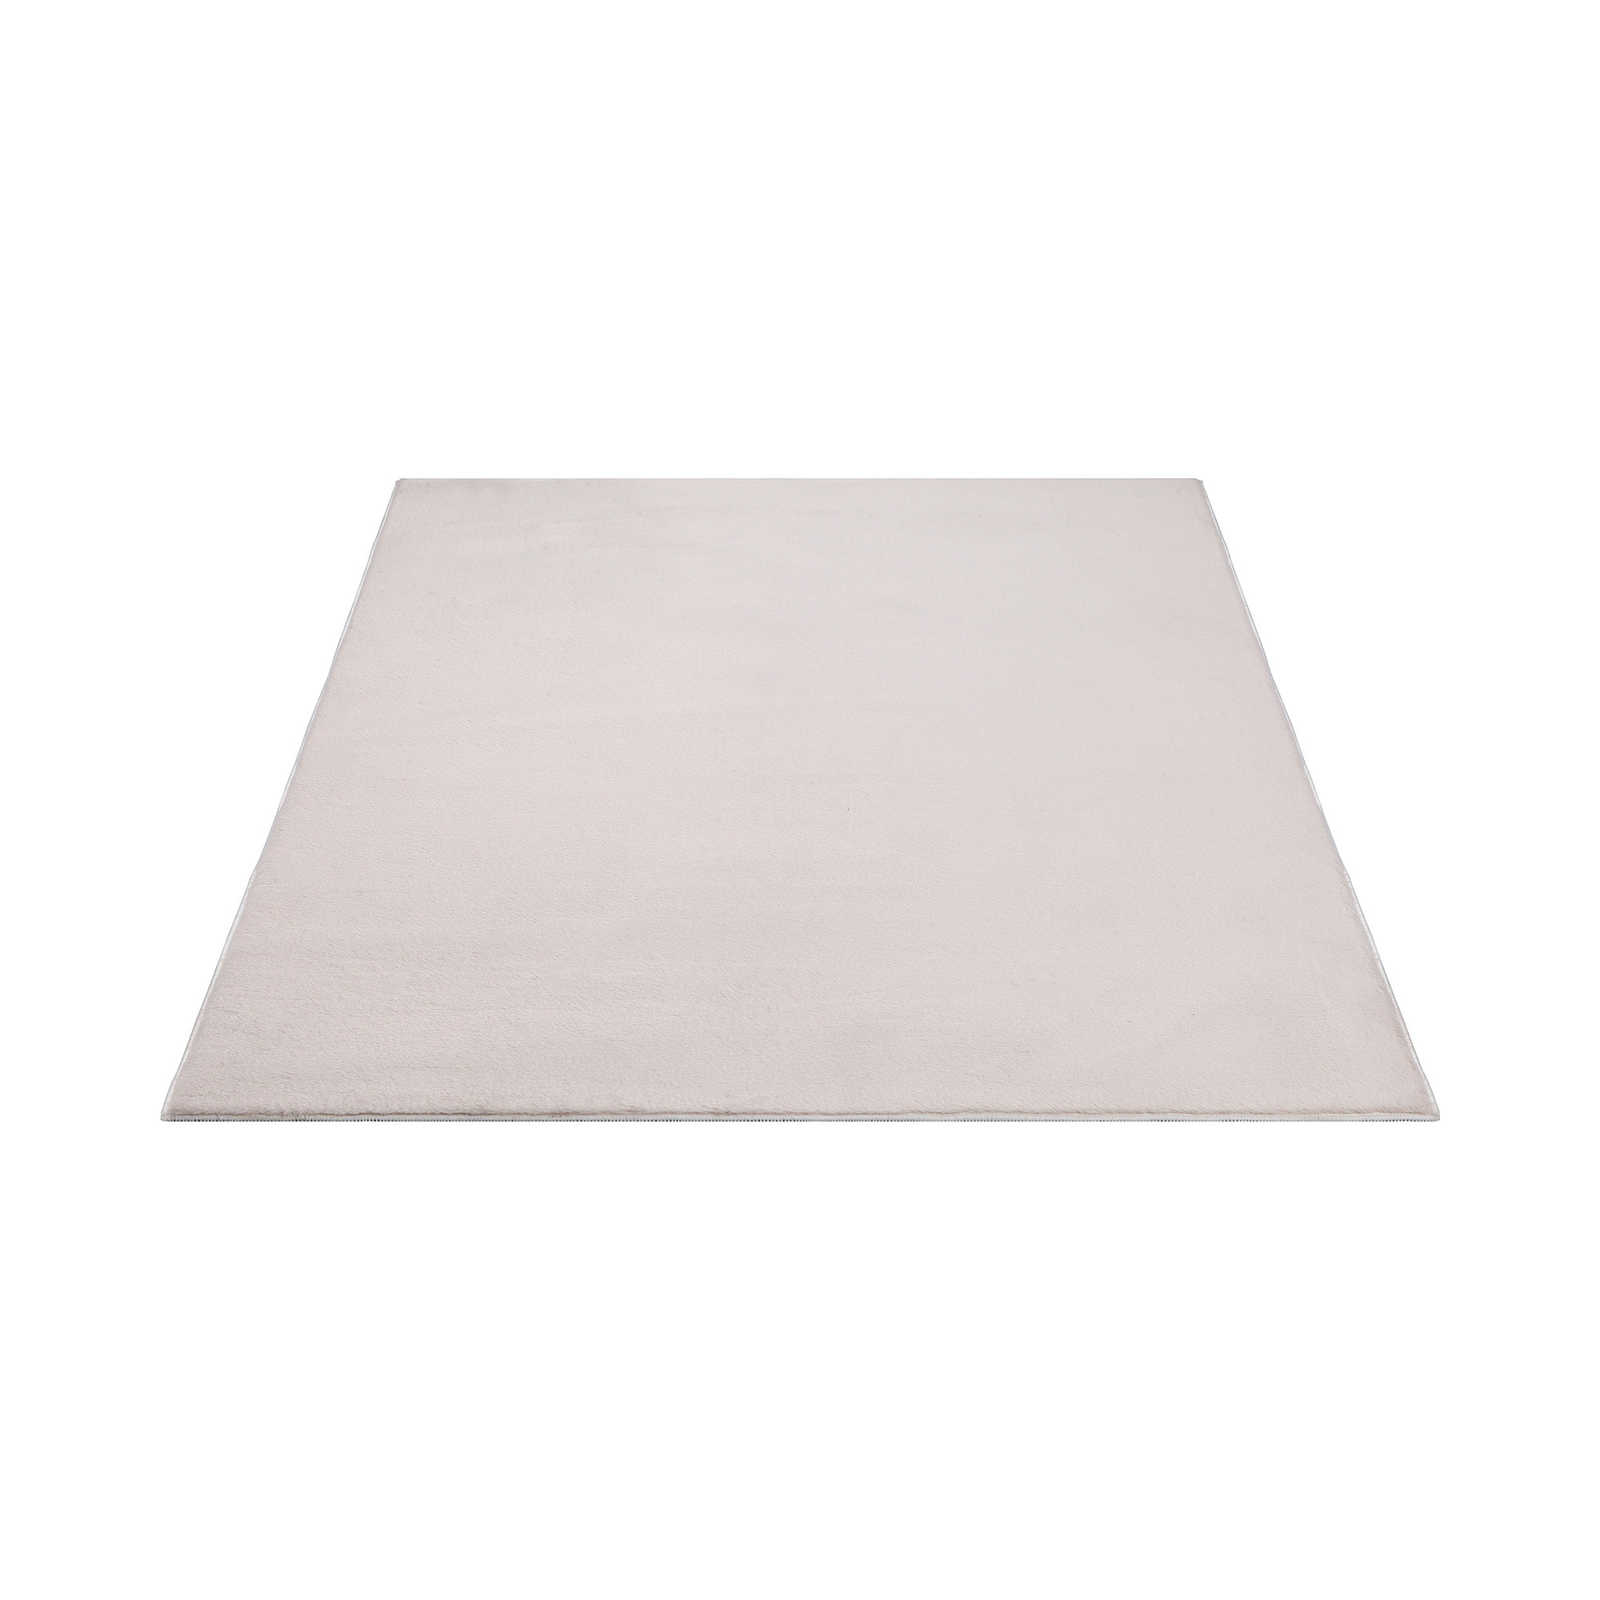 Einfarbiger Hochflor Teppich in sanften Beige – 280 x 200 cm
